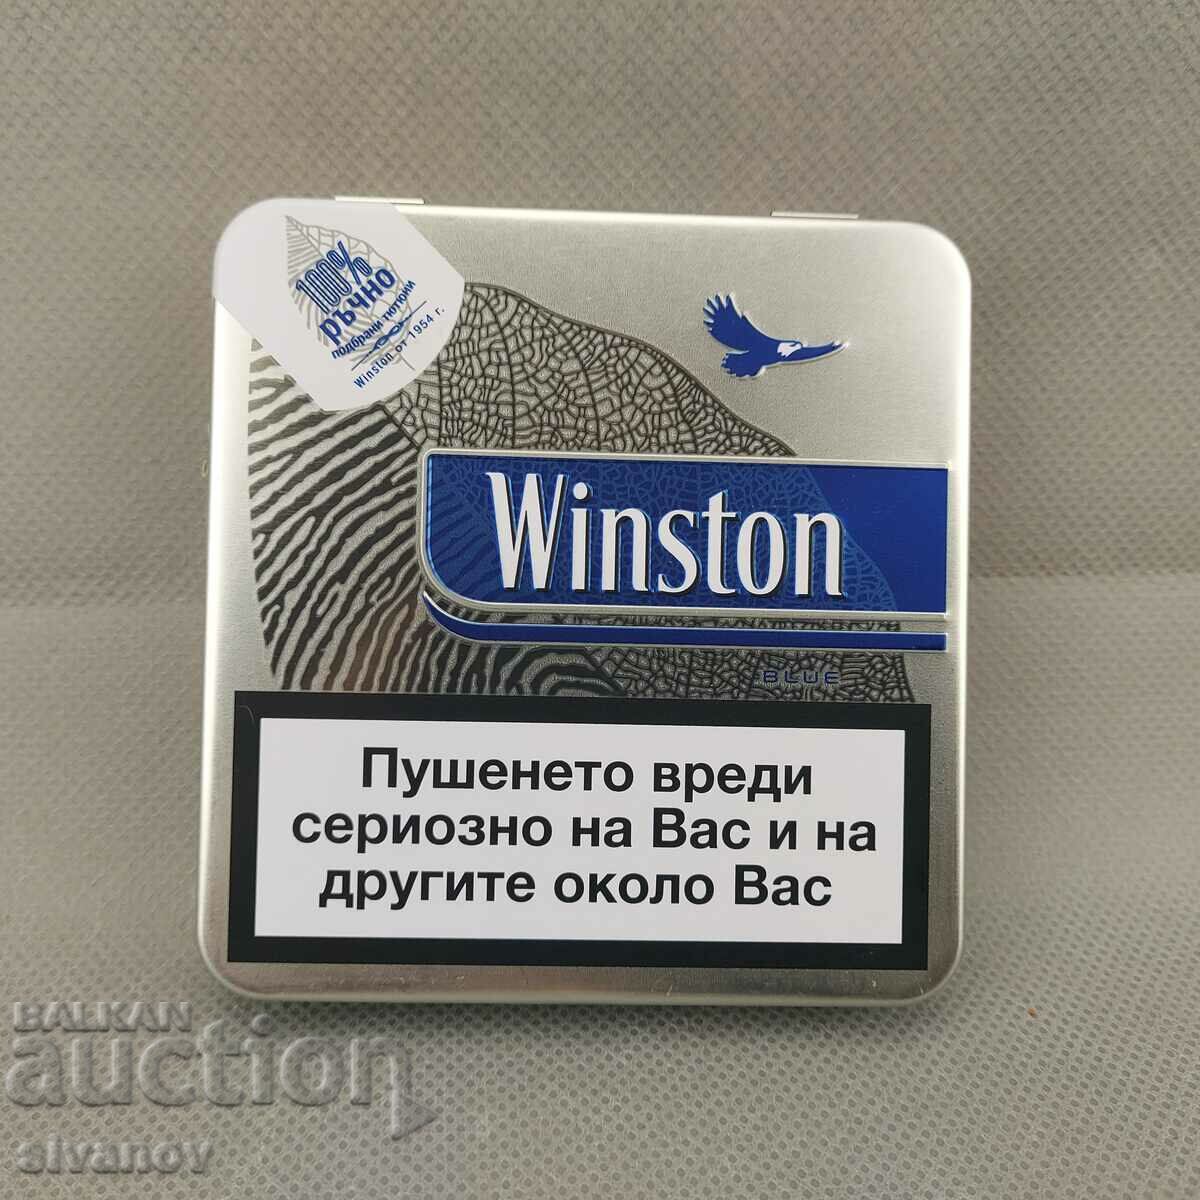 Limited Edition Winston Cigarette Metal Snuff Box #1960